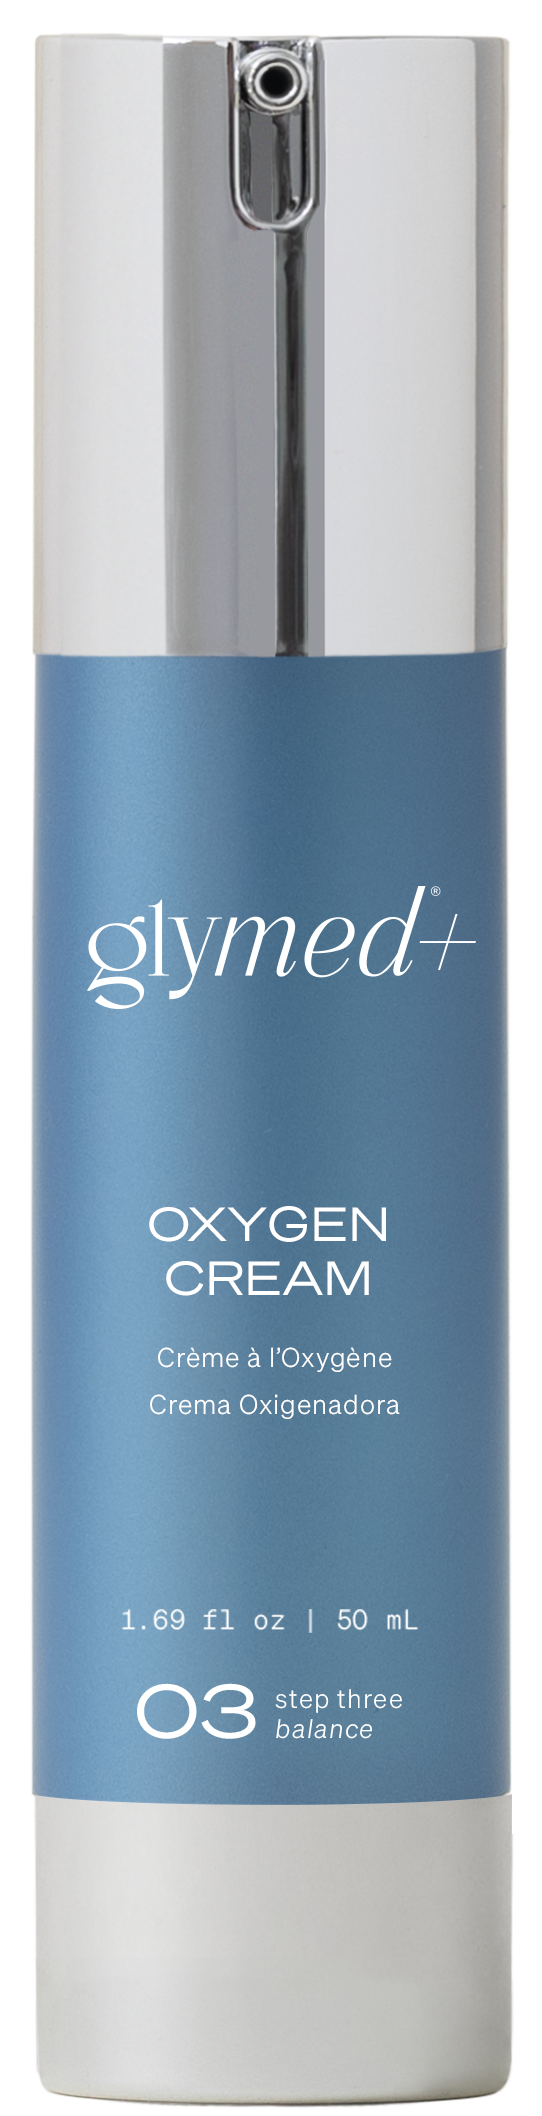 Oxygen Cream